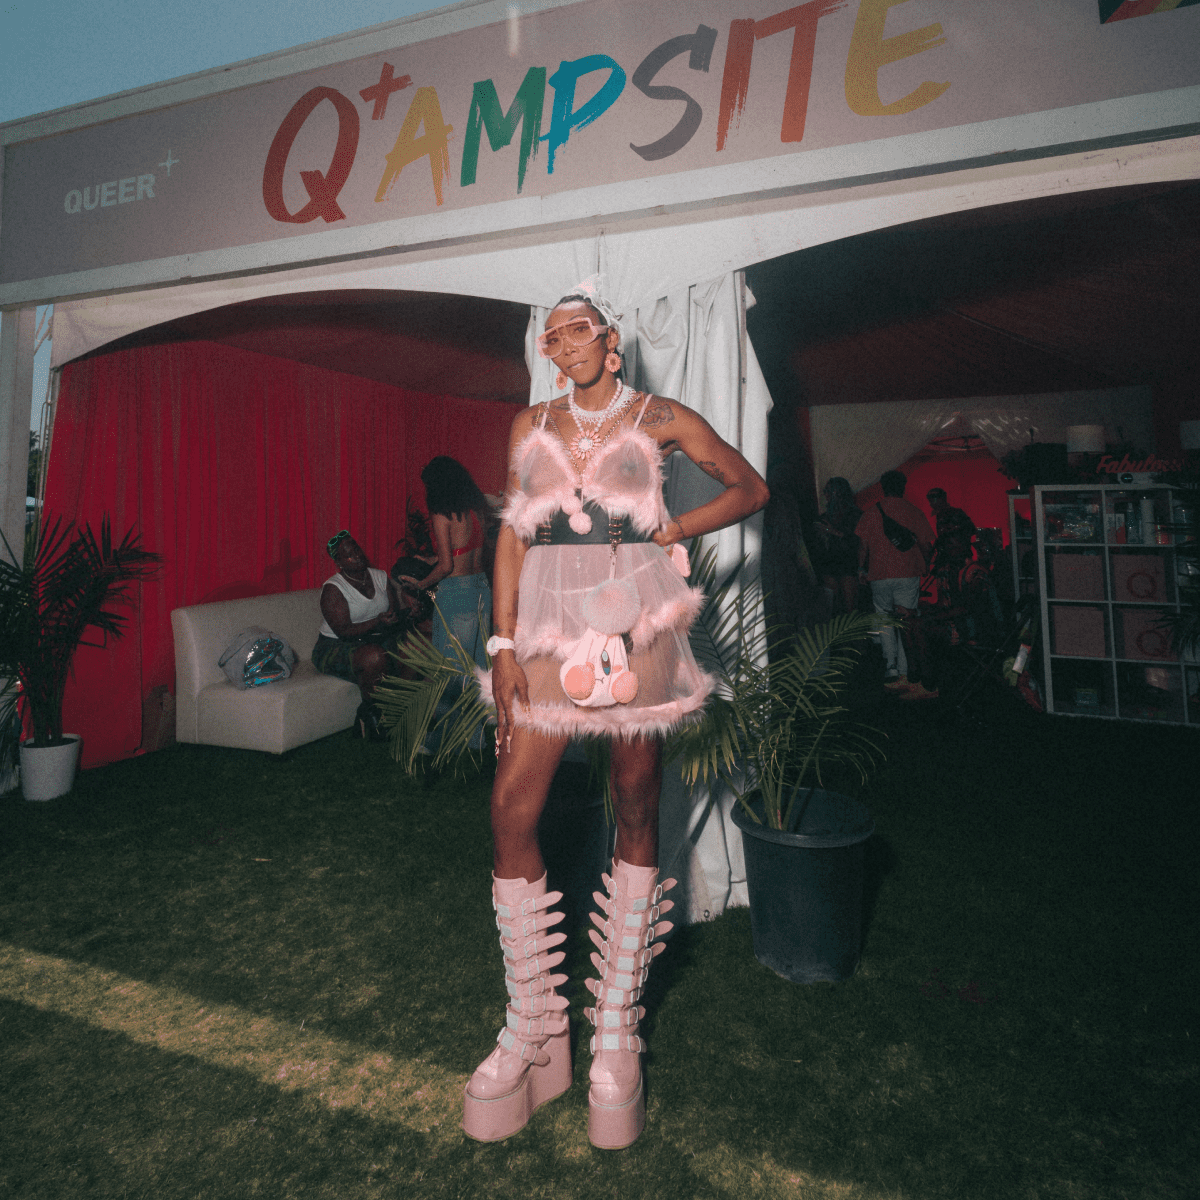 Coachella fan standing in front of Queer+ tent